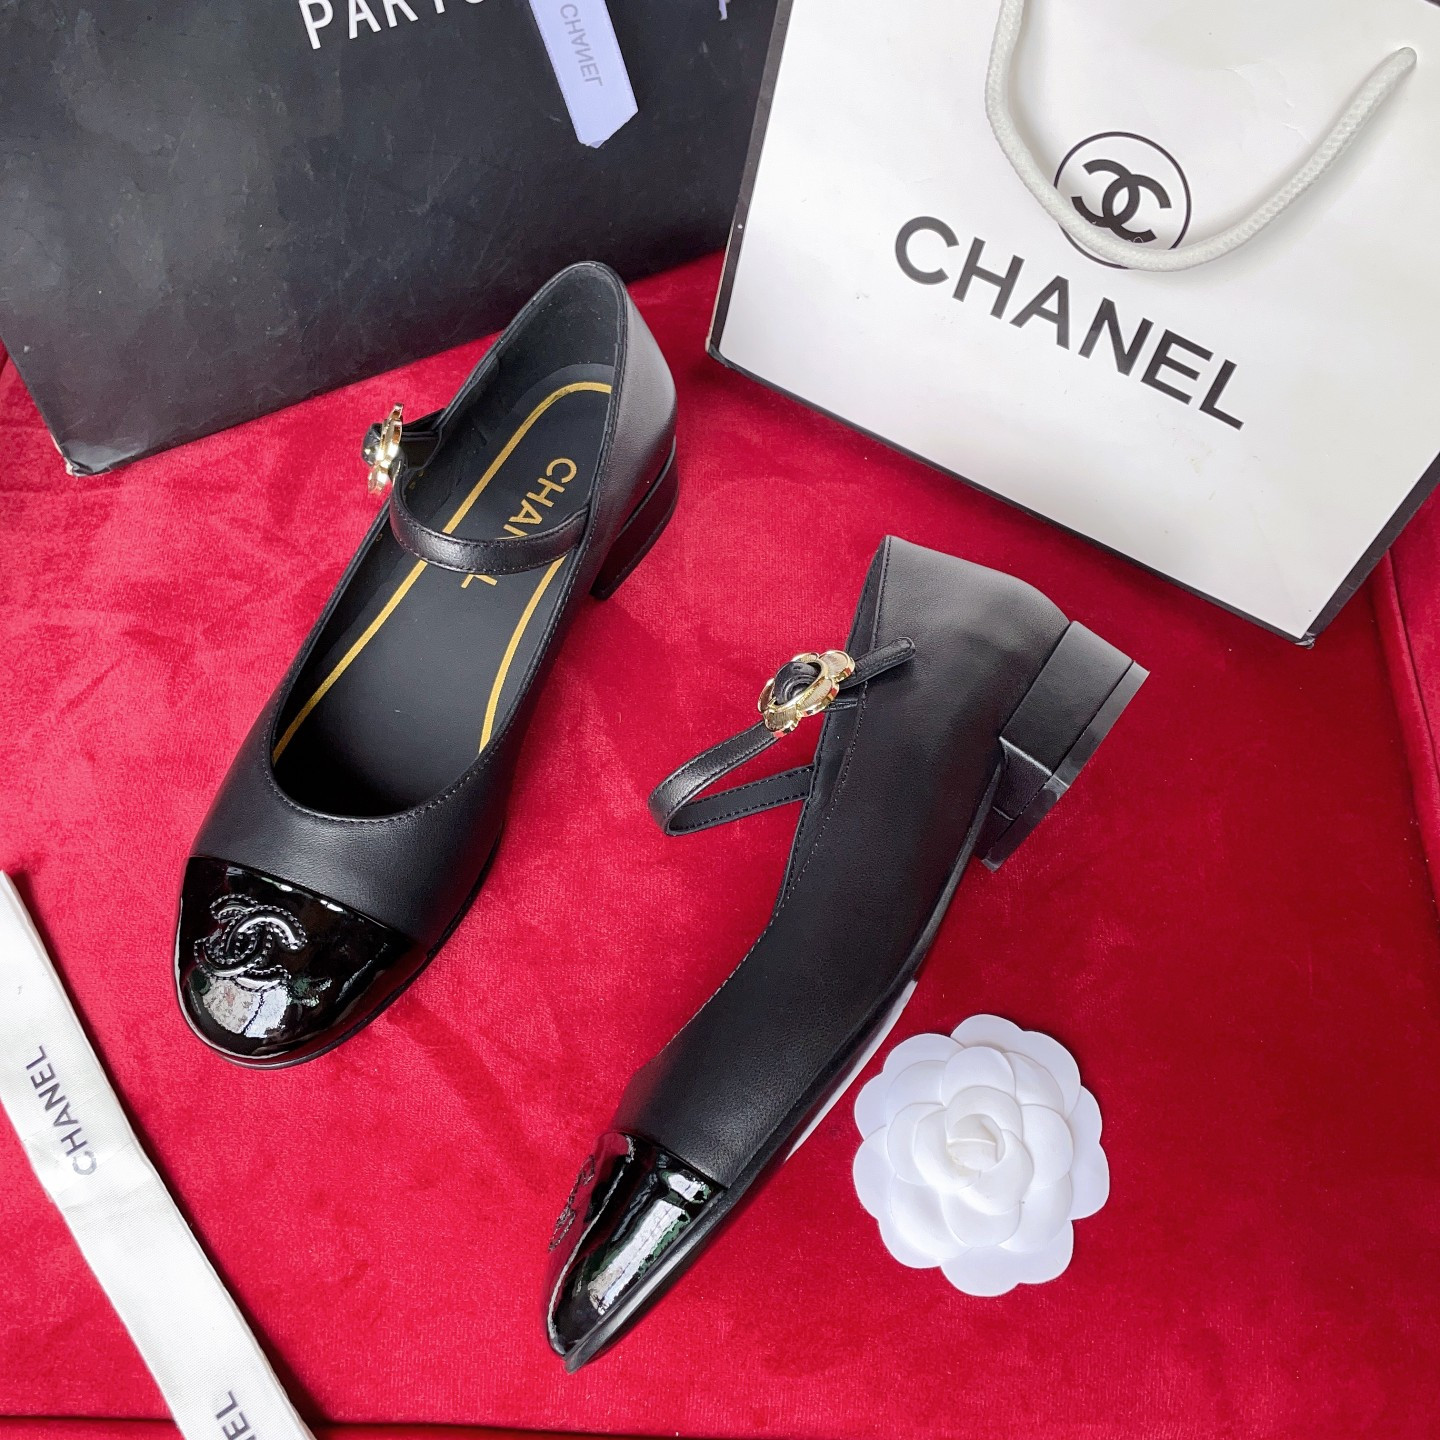 Giày Chanel Siêu Cấp Đế 2,5cm Da Bò Mũi Bọc Đen Bóng Đủ Size